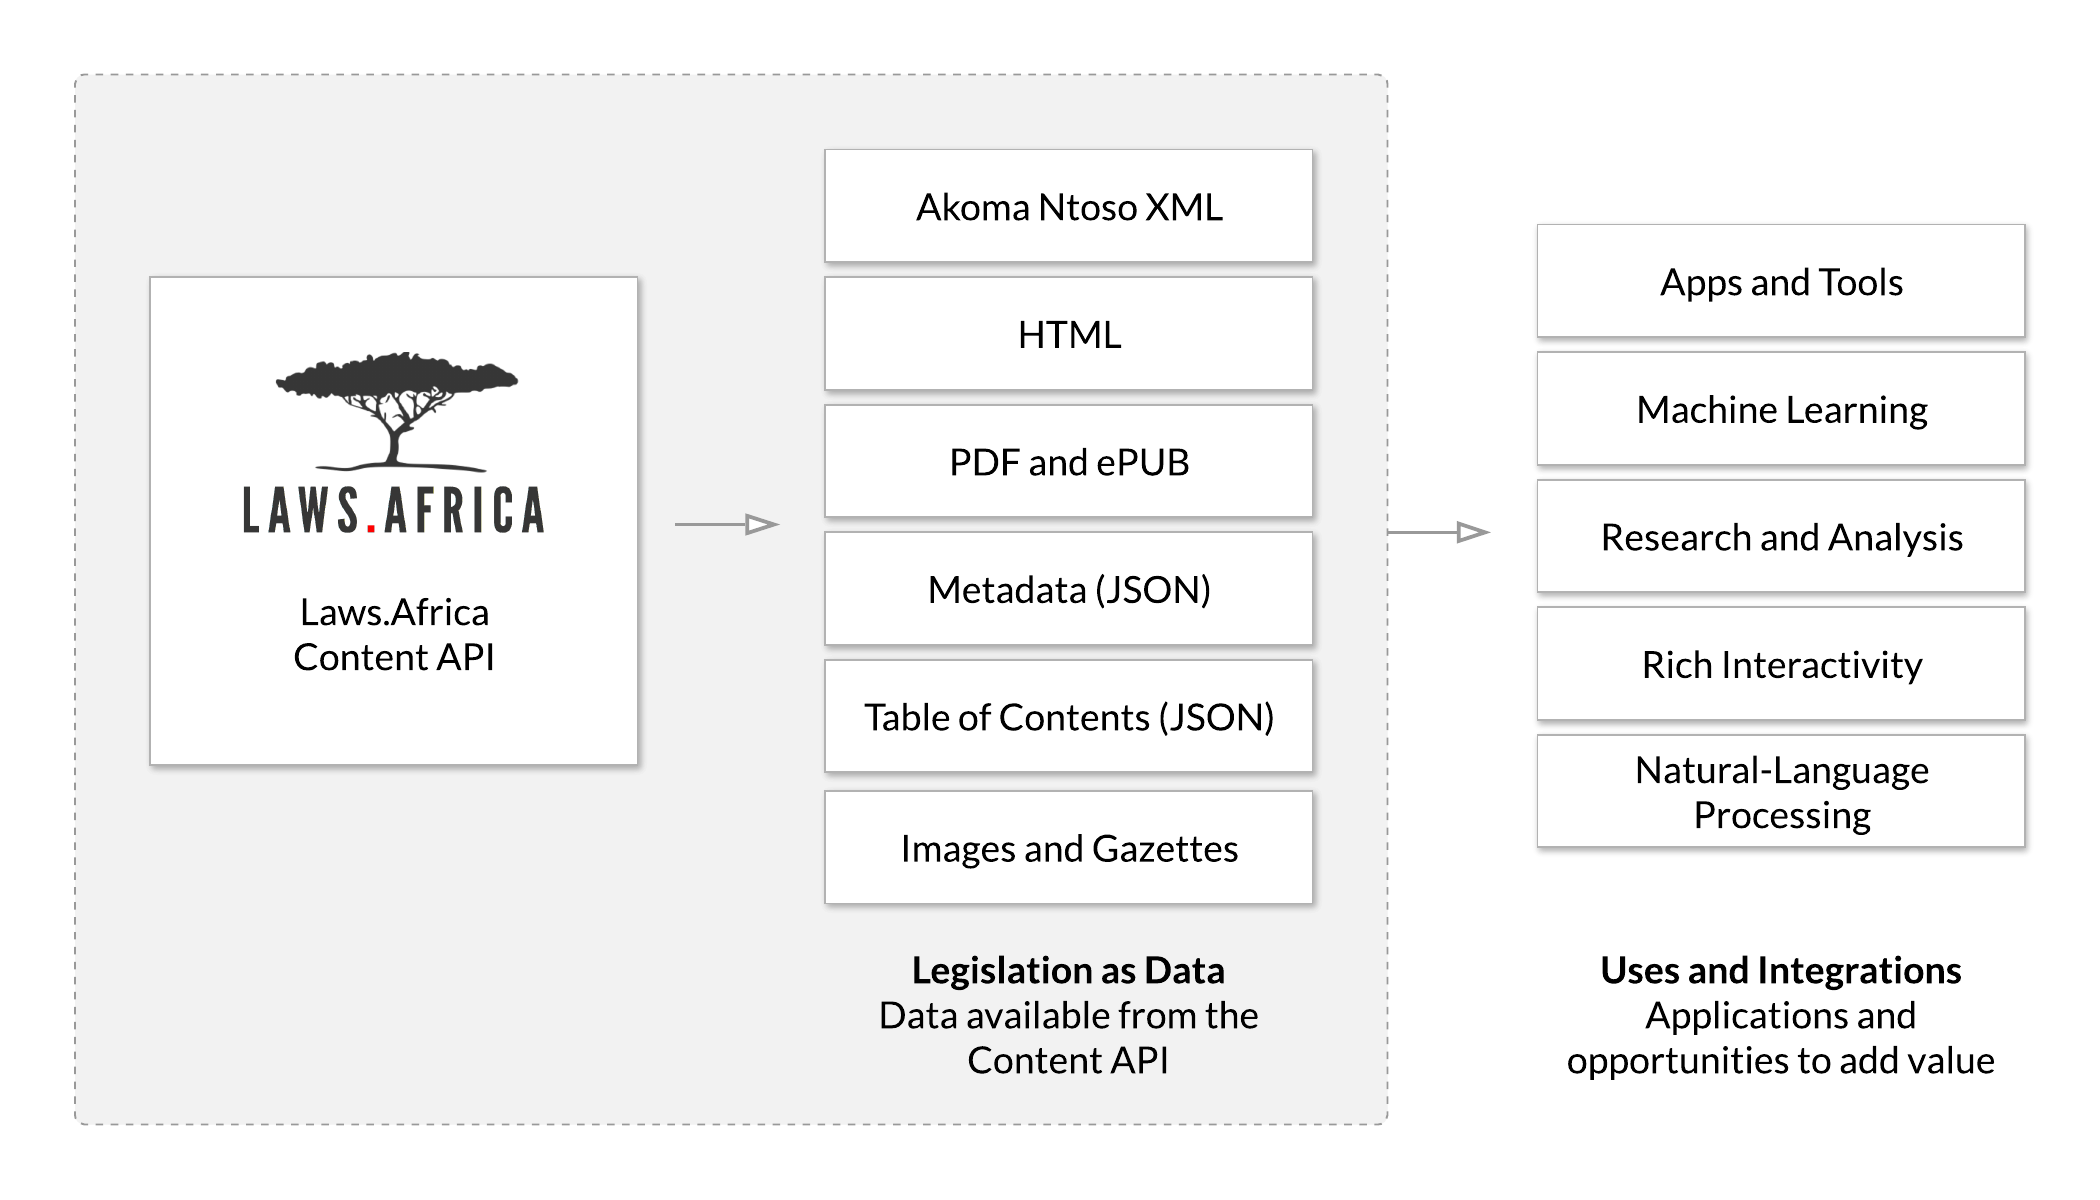 Laws.Africa Content API diagram